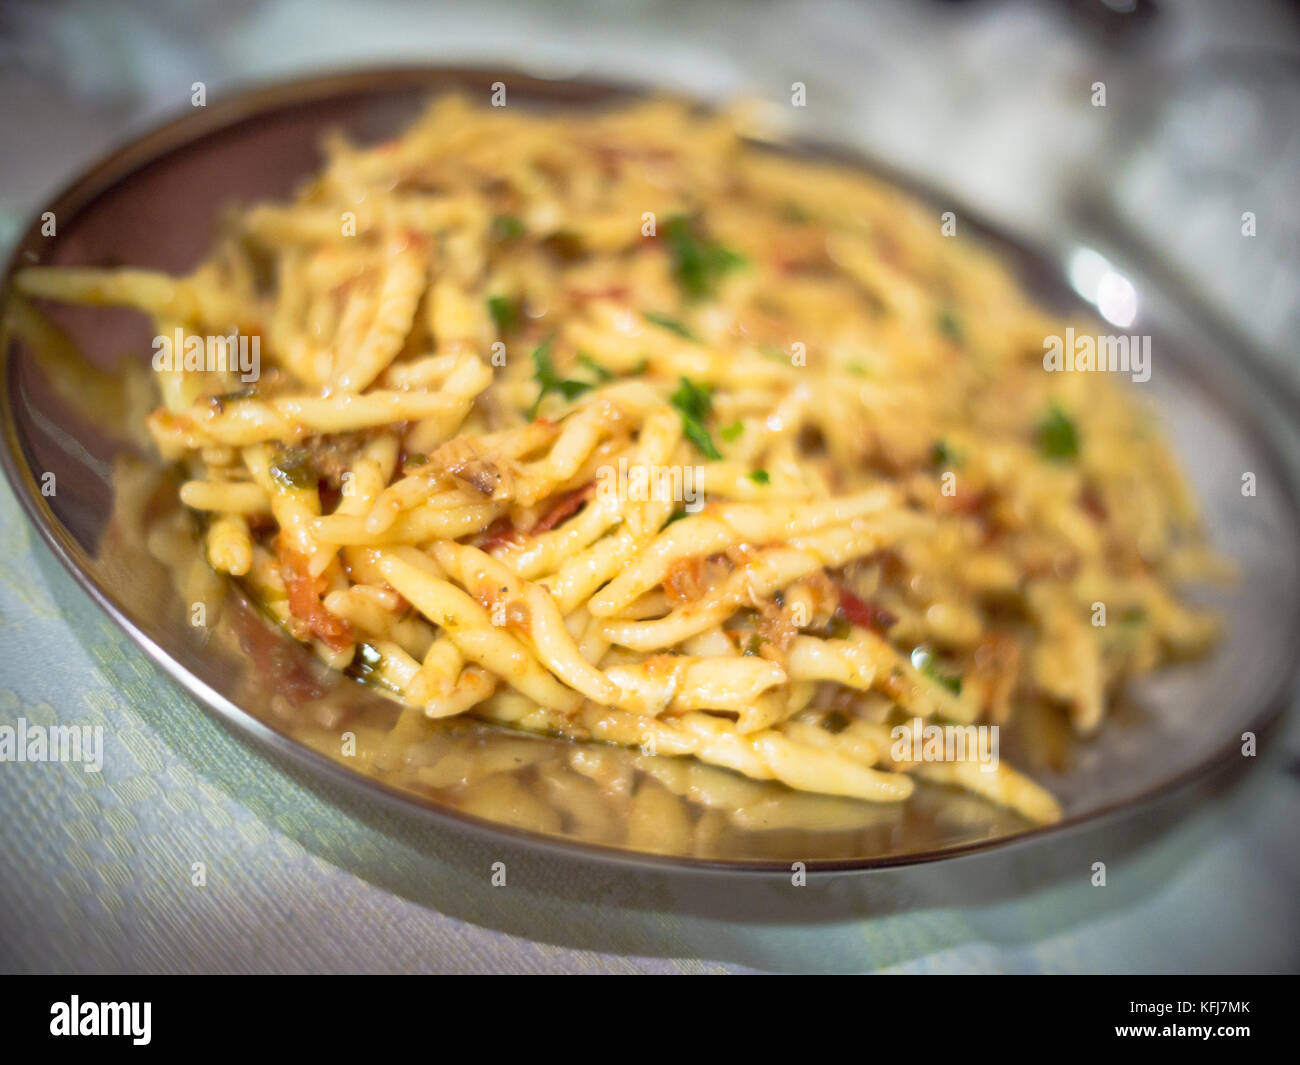 Insbesondere der handgefertigten italienischen Pasta. absichtlich unscharf Foto Stockfoto